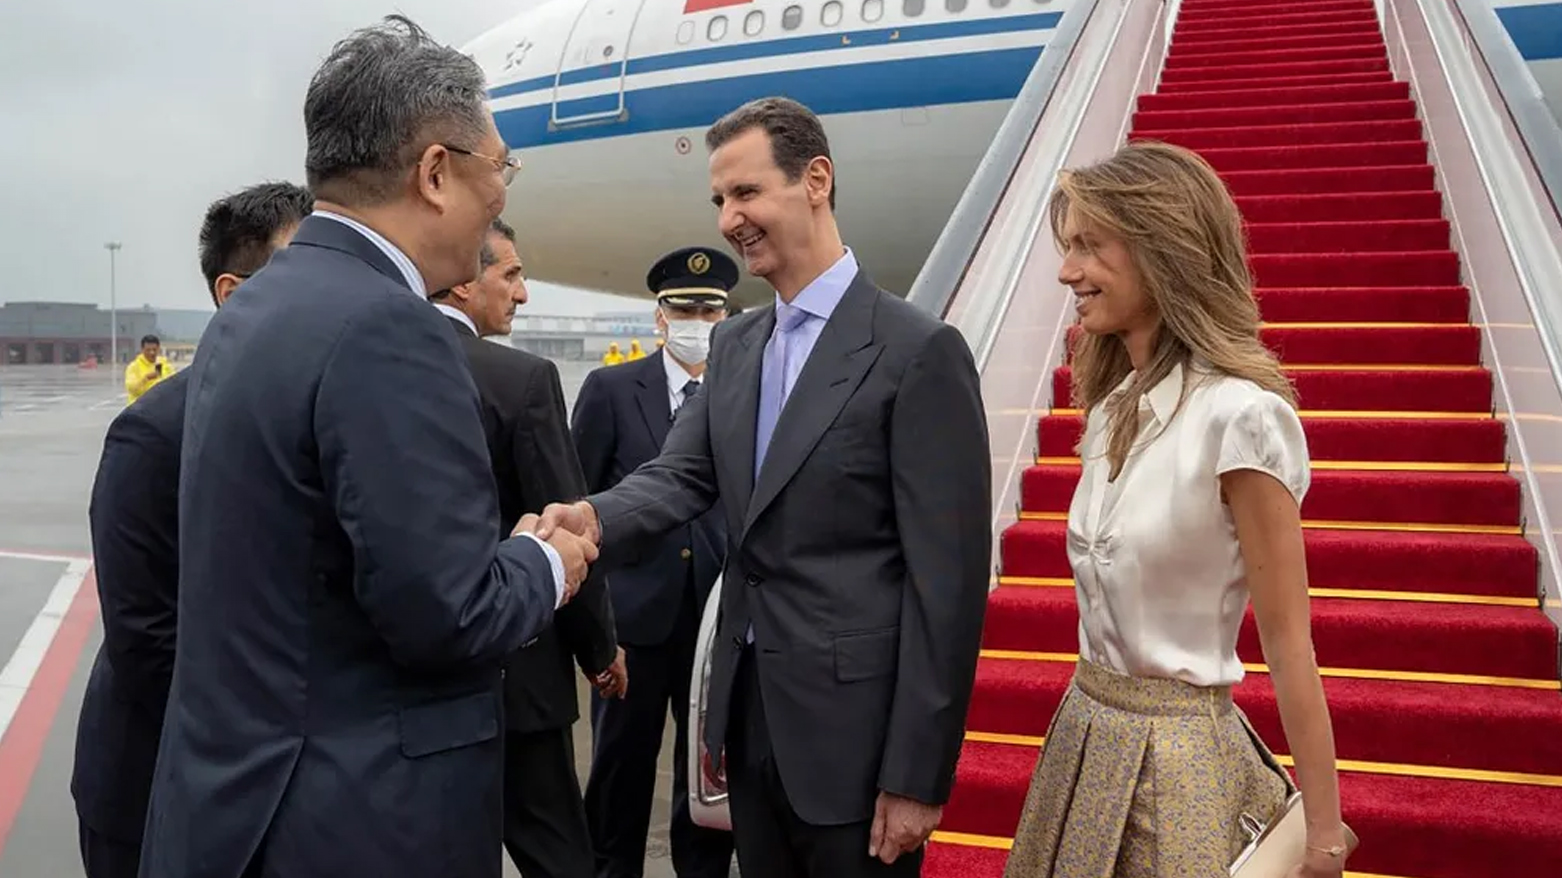 أثناء استقبال الرئيس السوري وزوجته لدى وصولهما إلى مطار بكين (سانا)